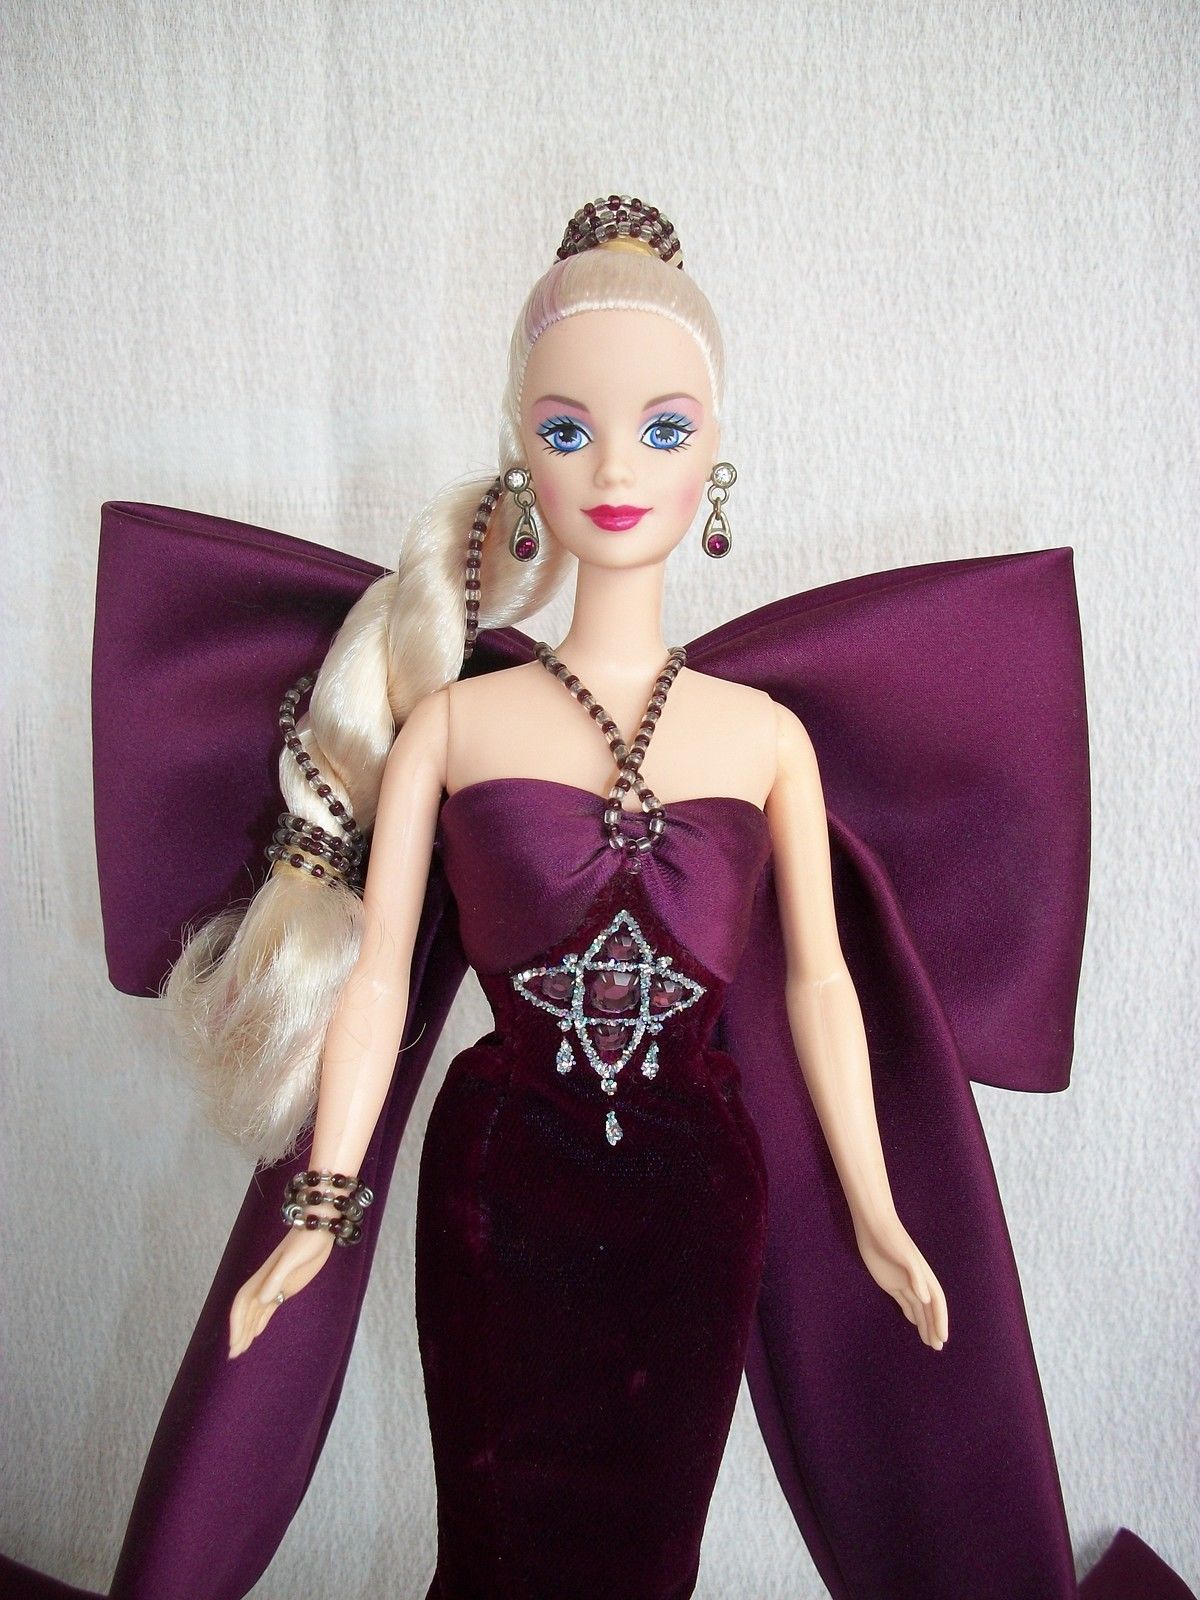 Crystal barbie